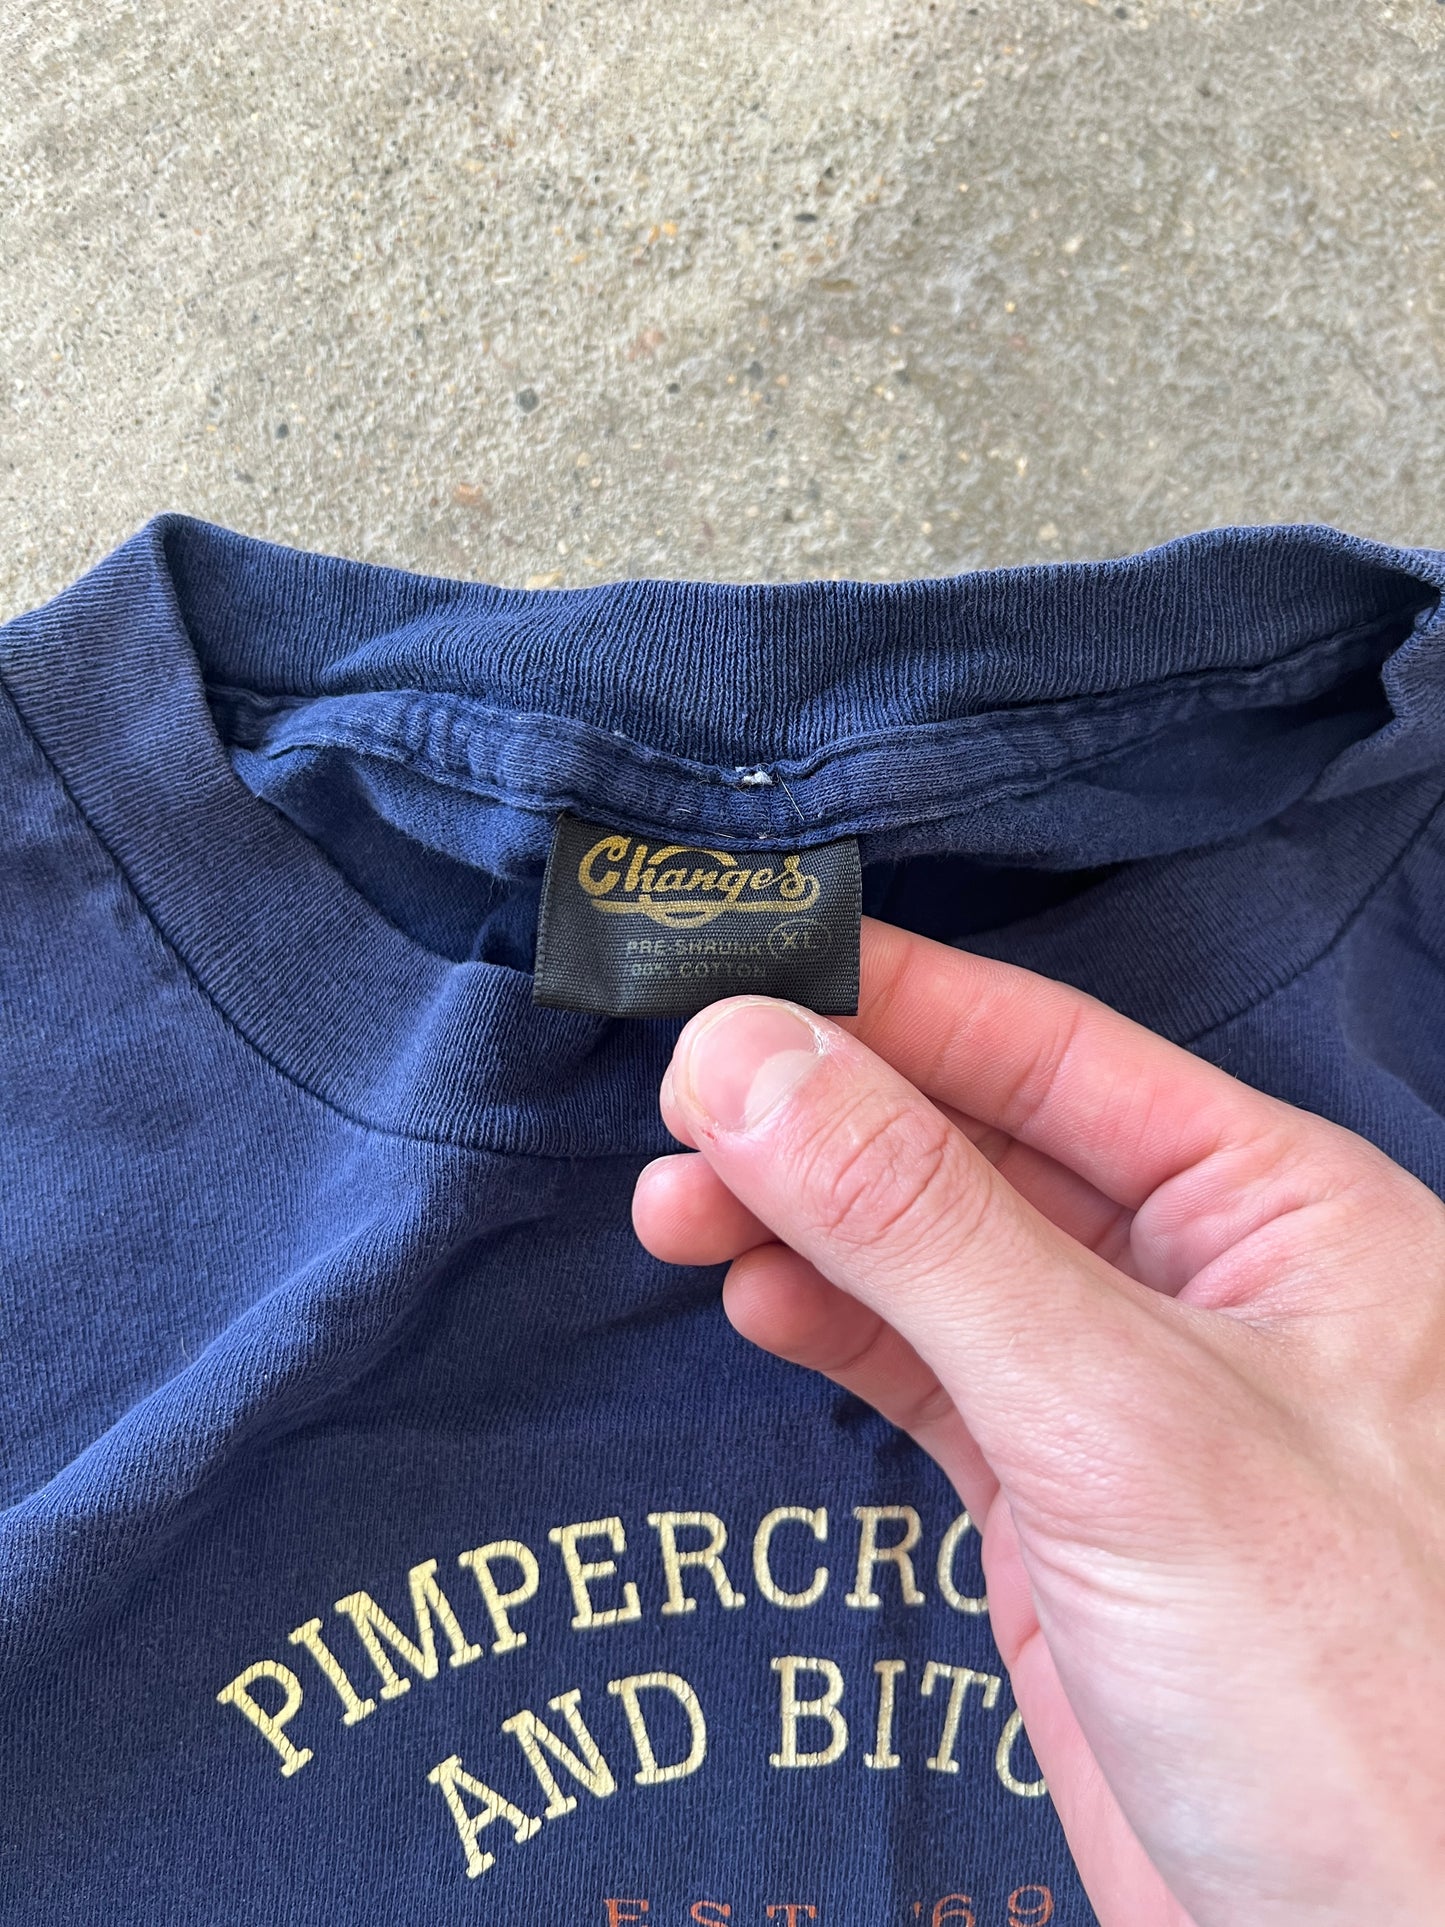 Vintage Pimpercrombie Shirt - XL